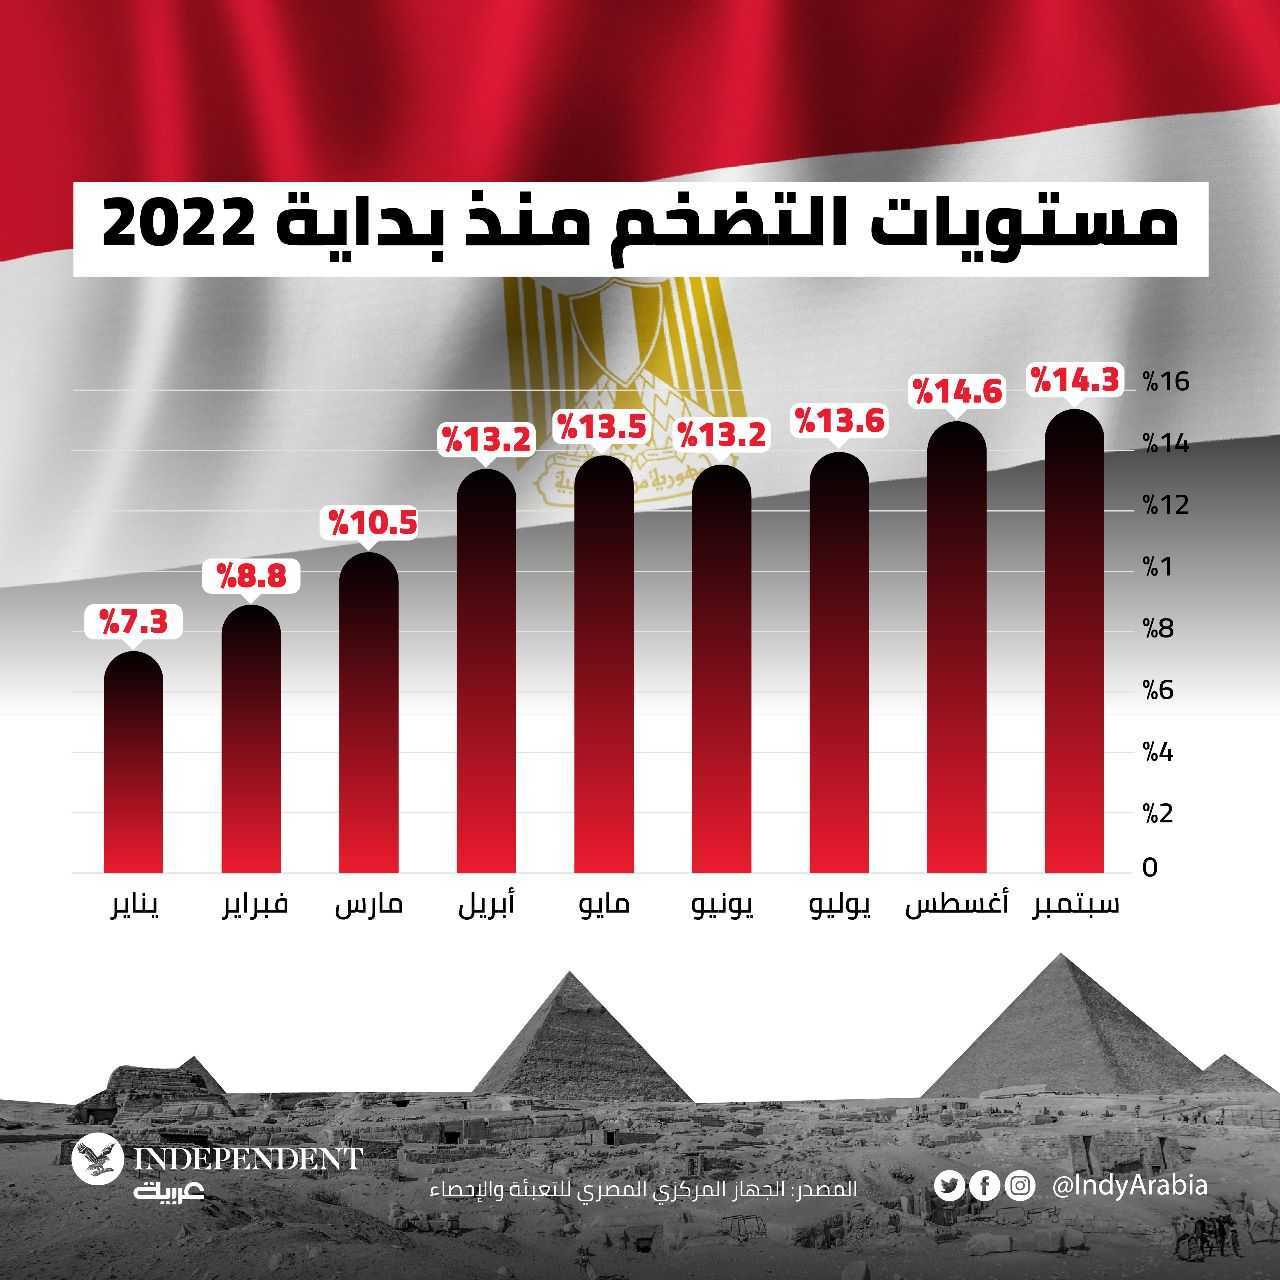 غراف مصر اليوم.jpg